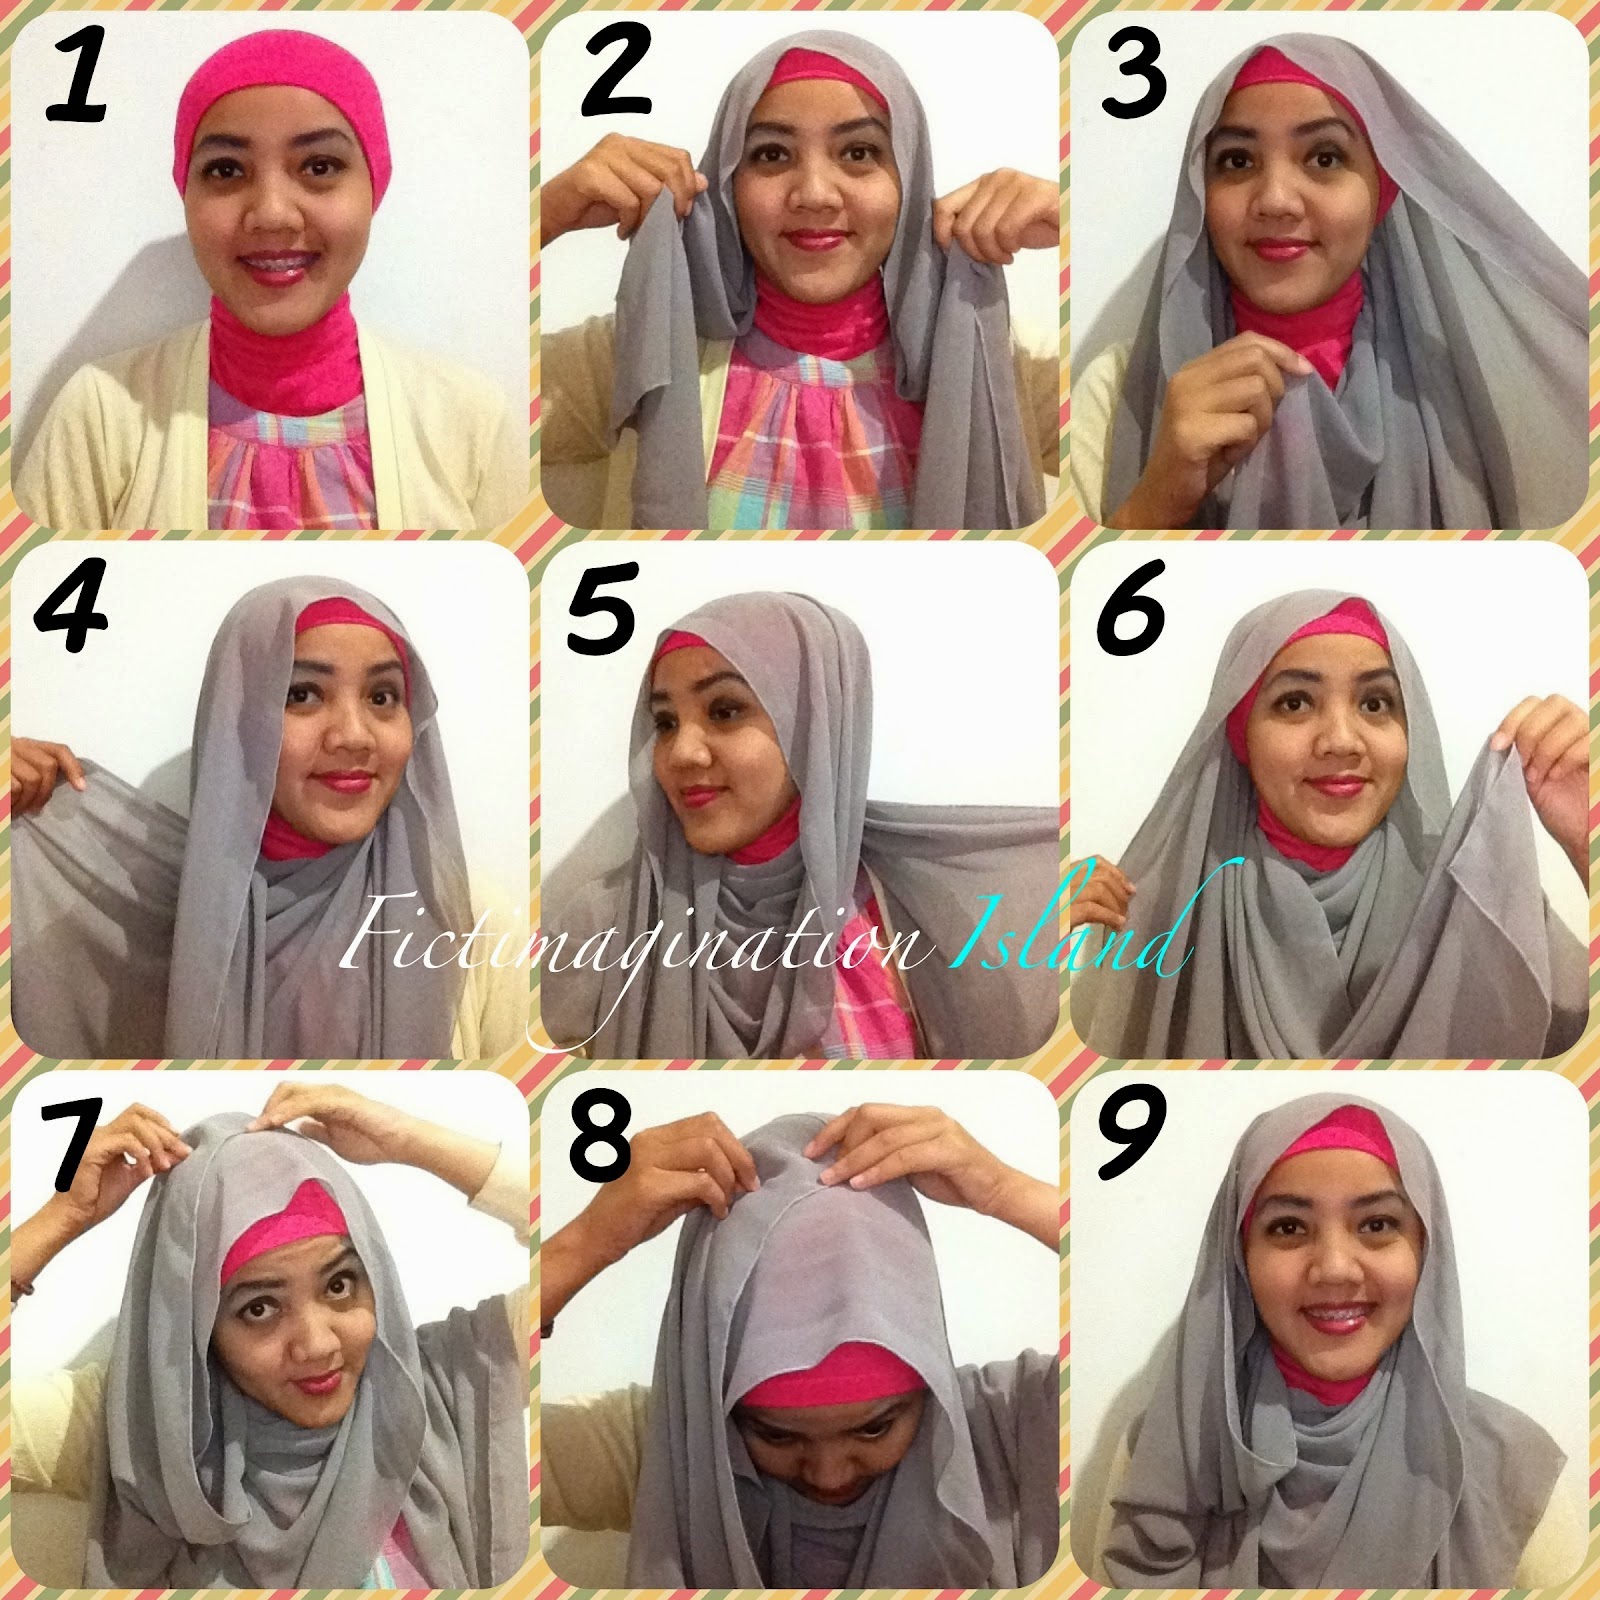 Tutorial Jilbab Segi Empat Dengan Headband Tutorial Hijab Paling